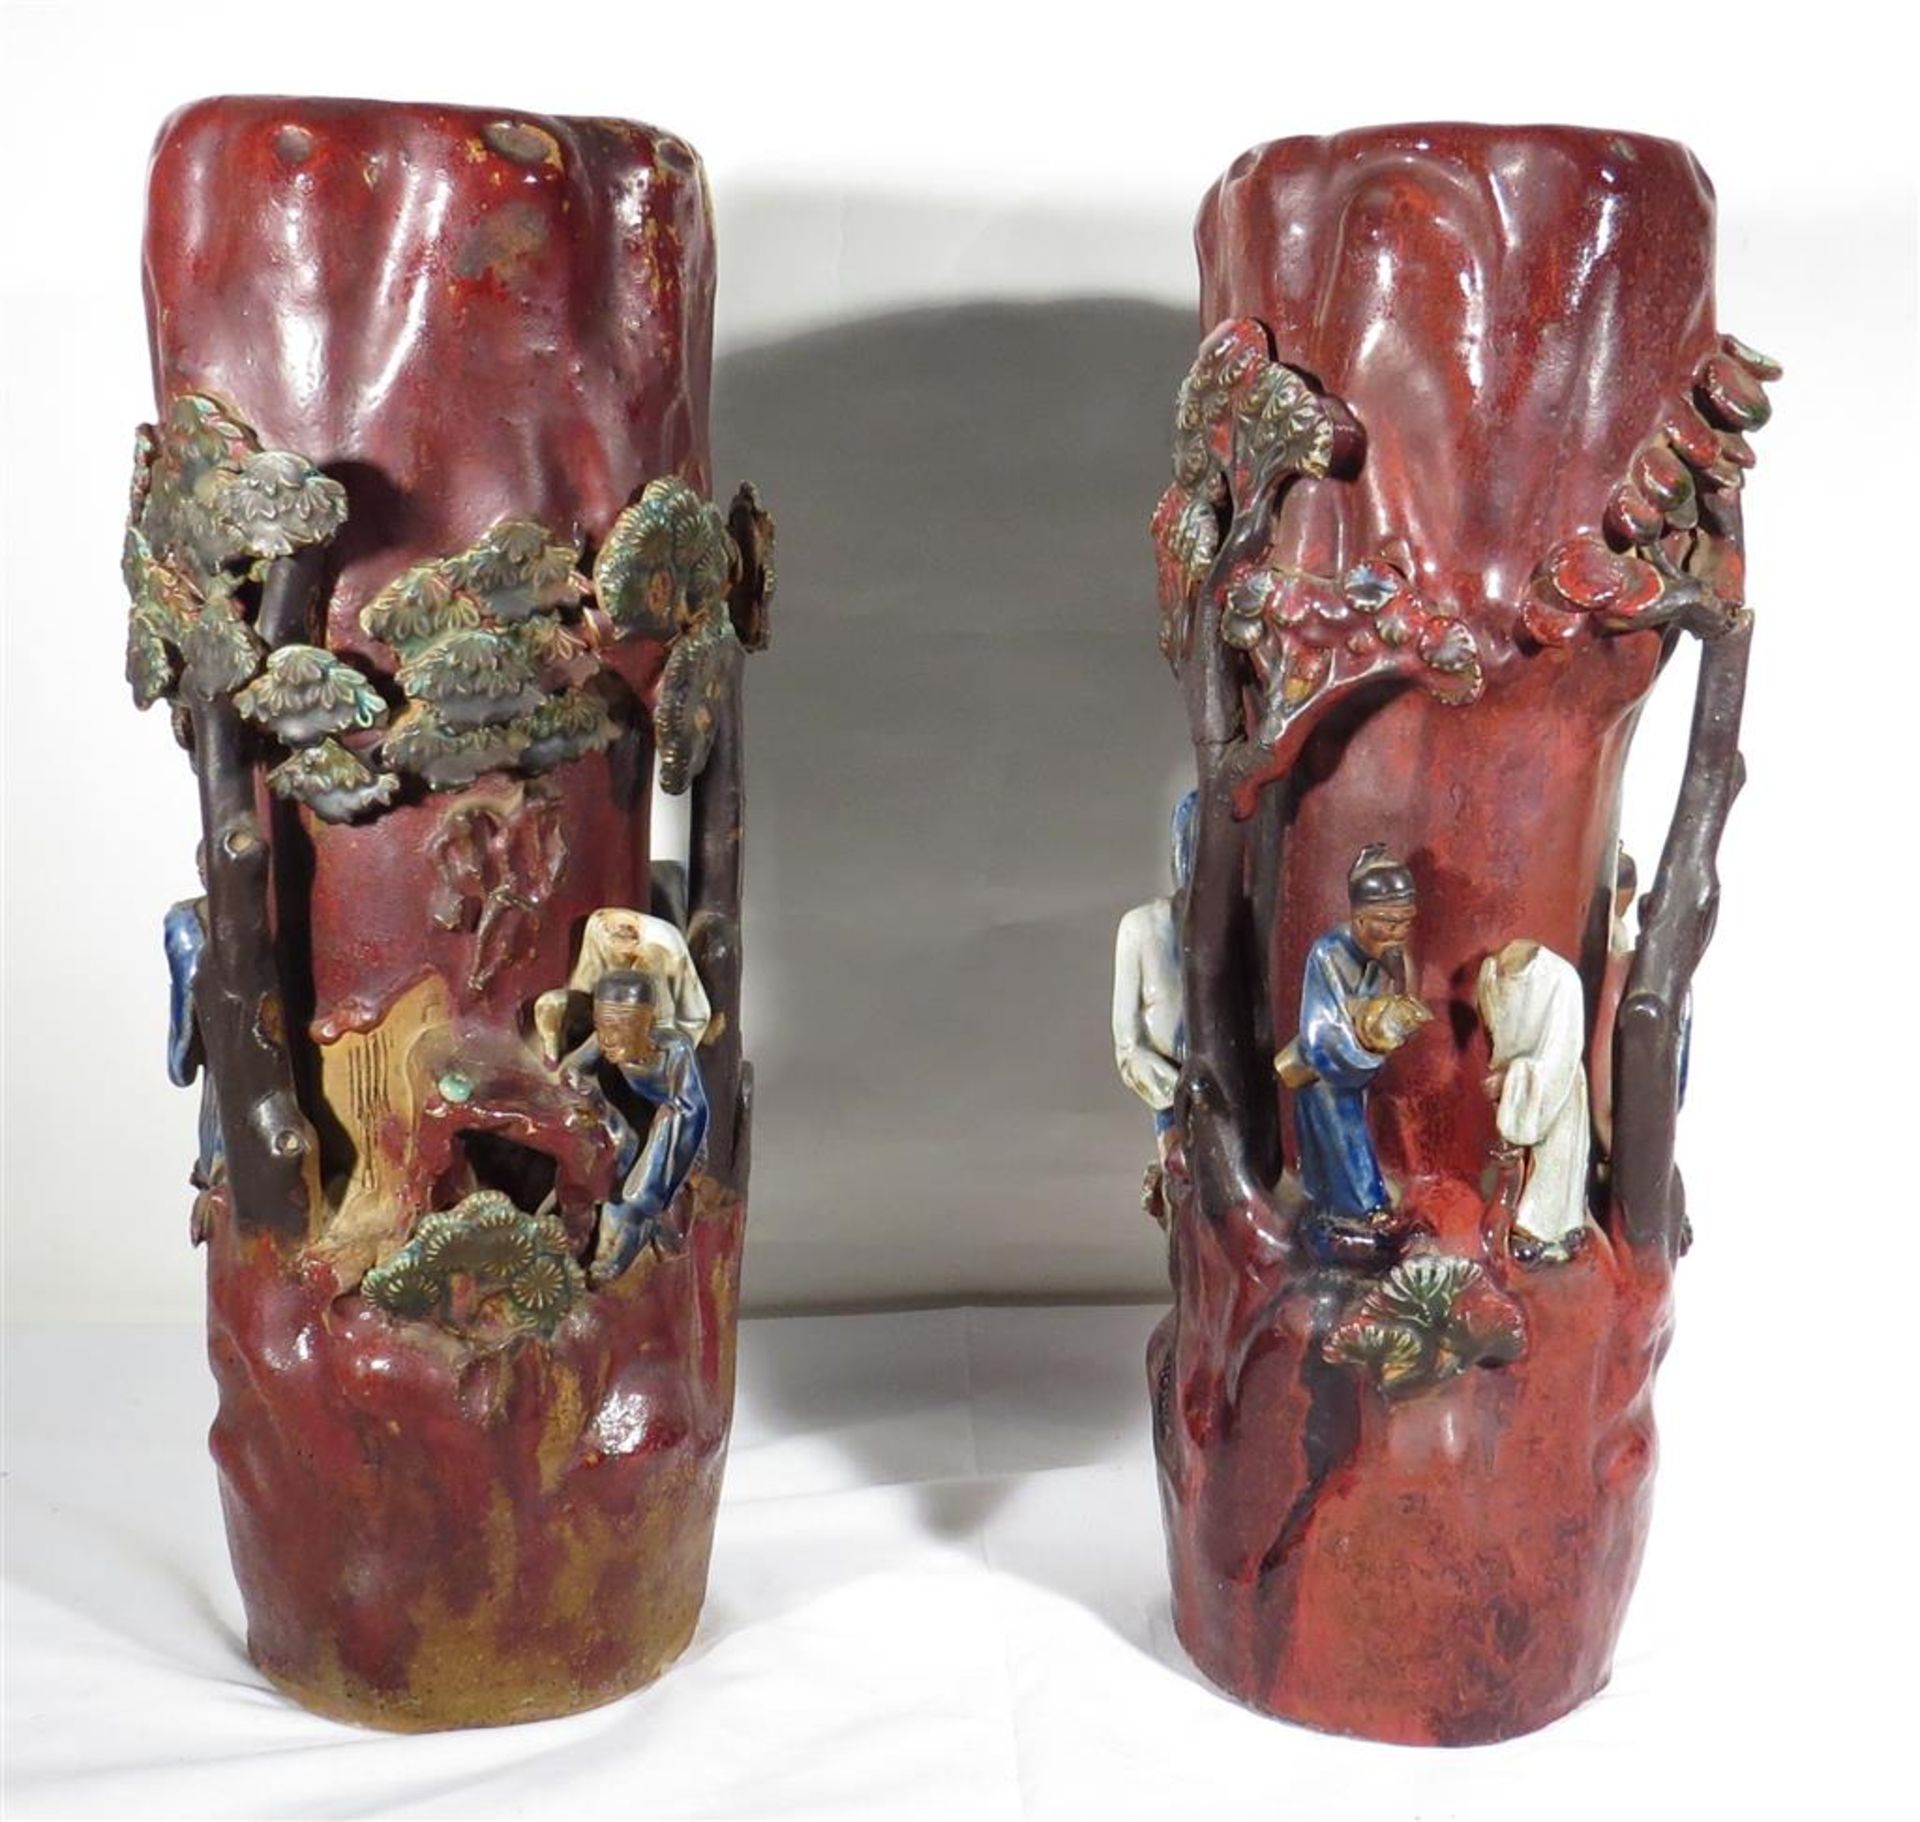 Art d'Asie. Paire de vase en céramique à décor en haut-relief de personnages [...] - Image 2 of 2